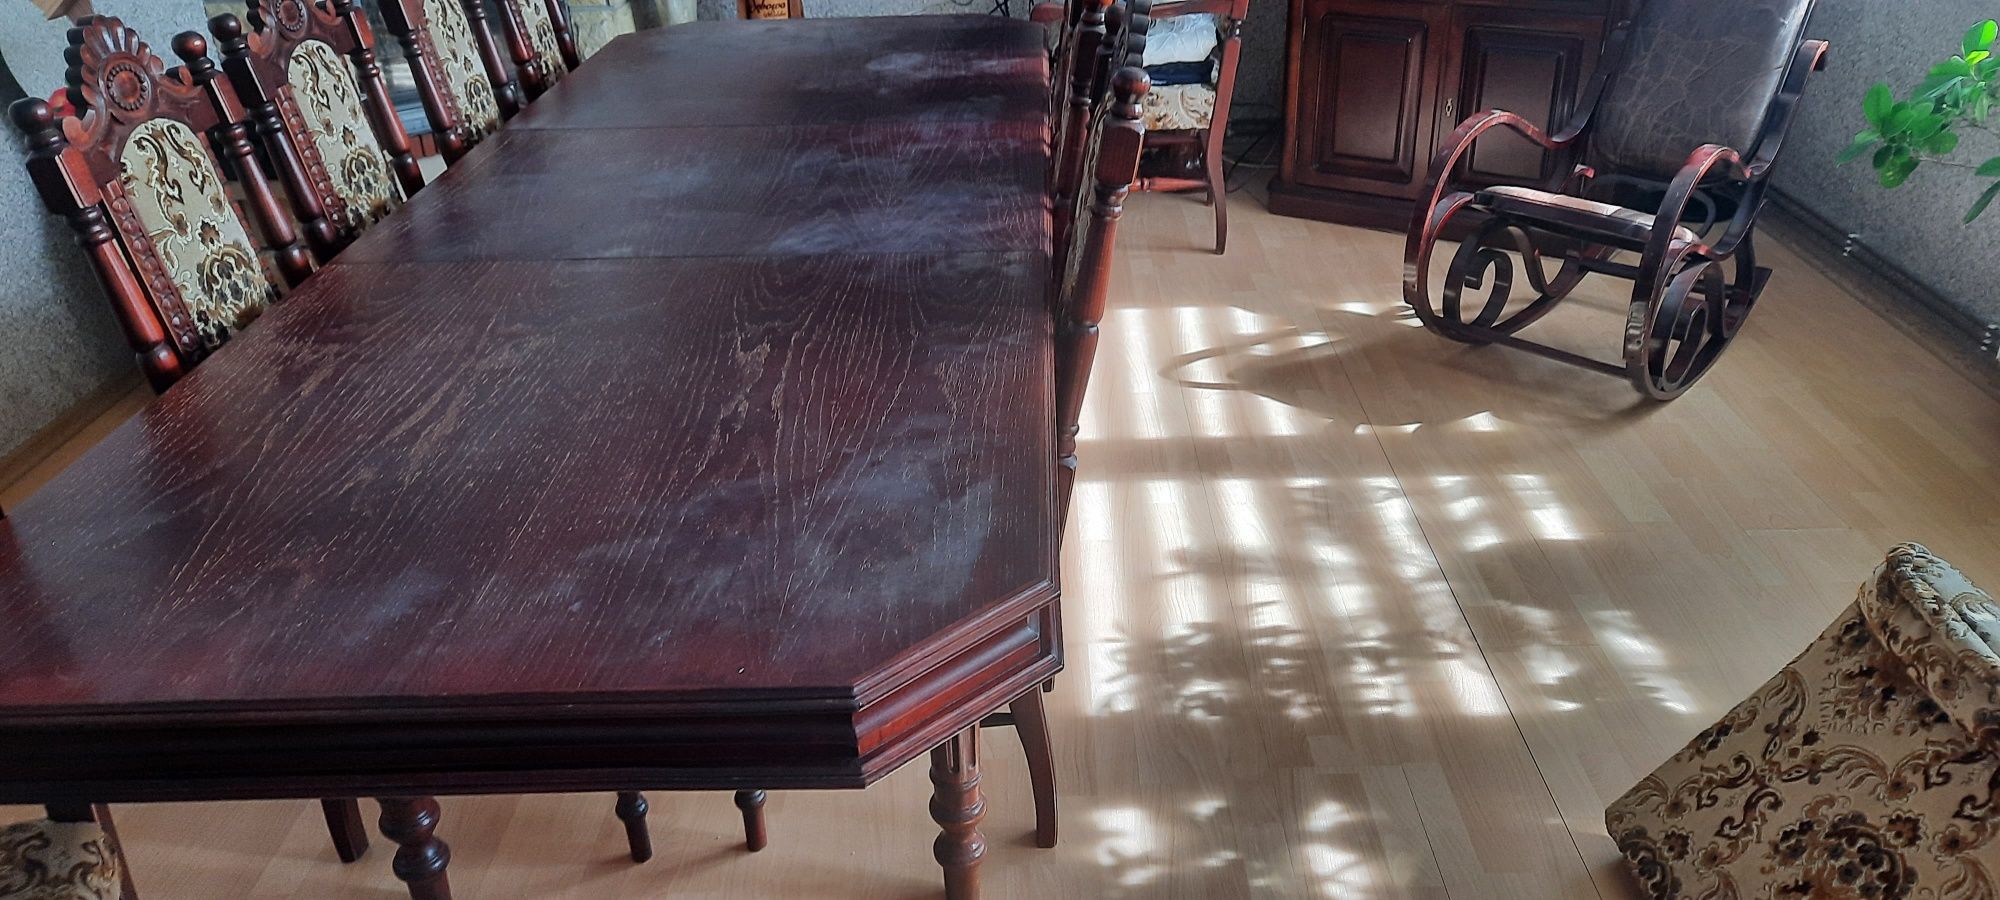 Okazja drewniany stol 200 cm po rozłożeniu 270 cm